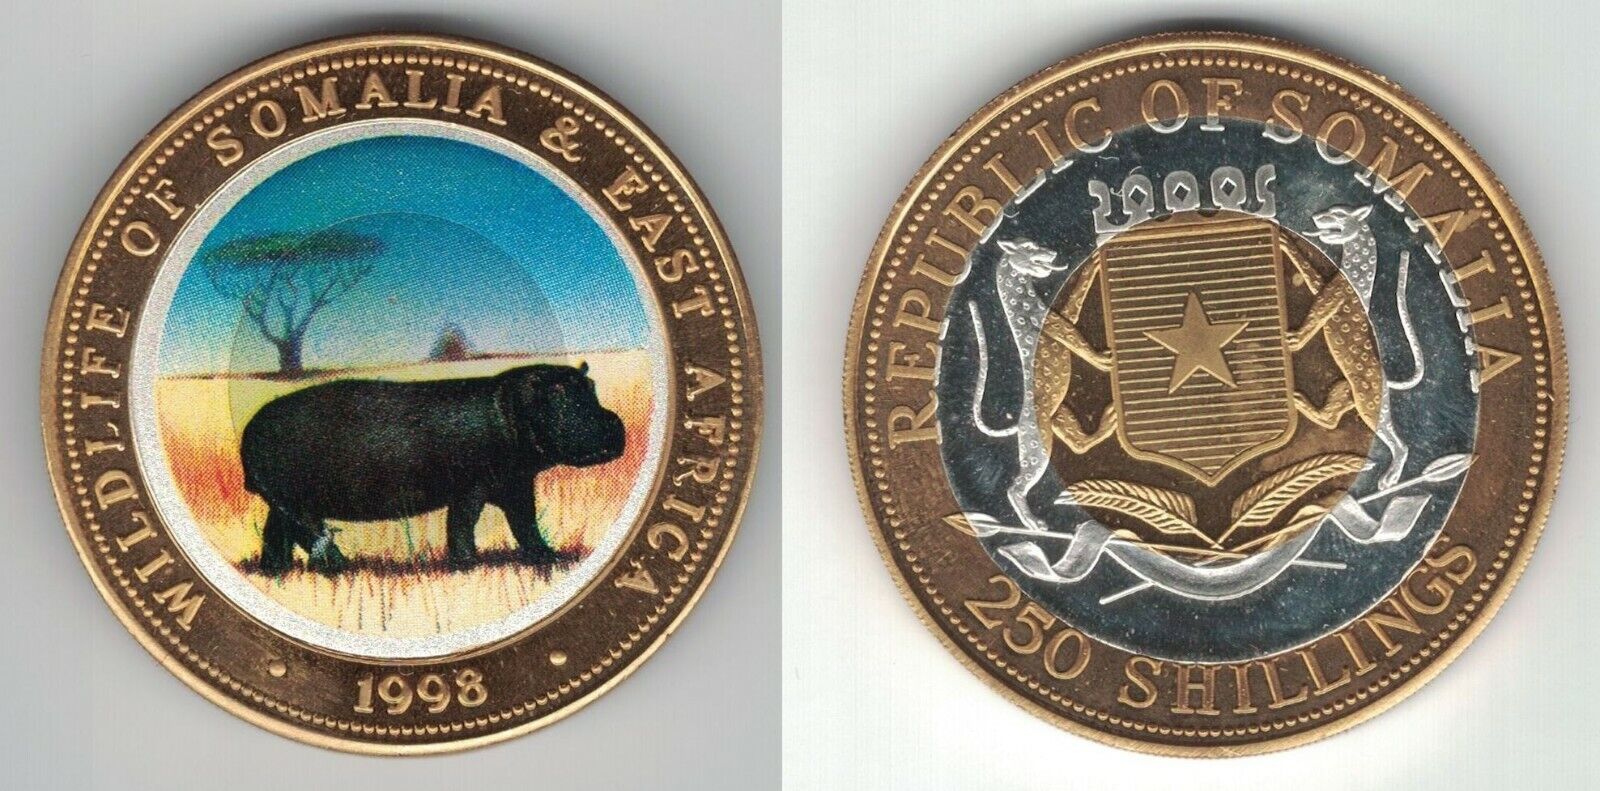 Somalia Colored Trimetal Unc 250 Shillings Coin 1998 Year Km#48a Hippo